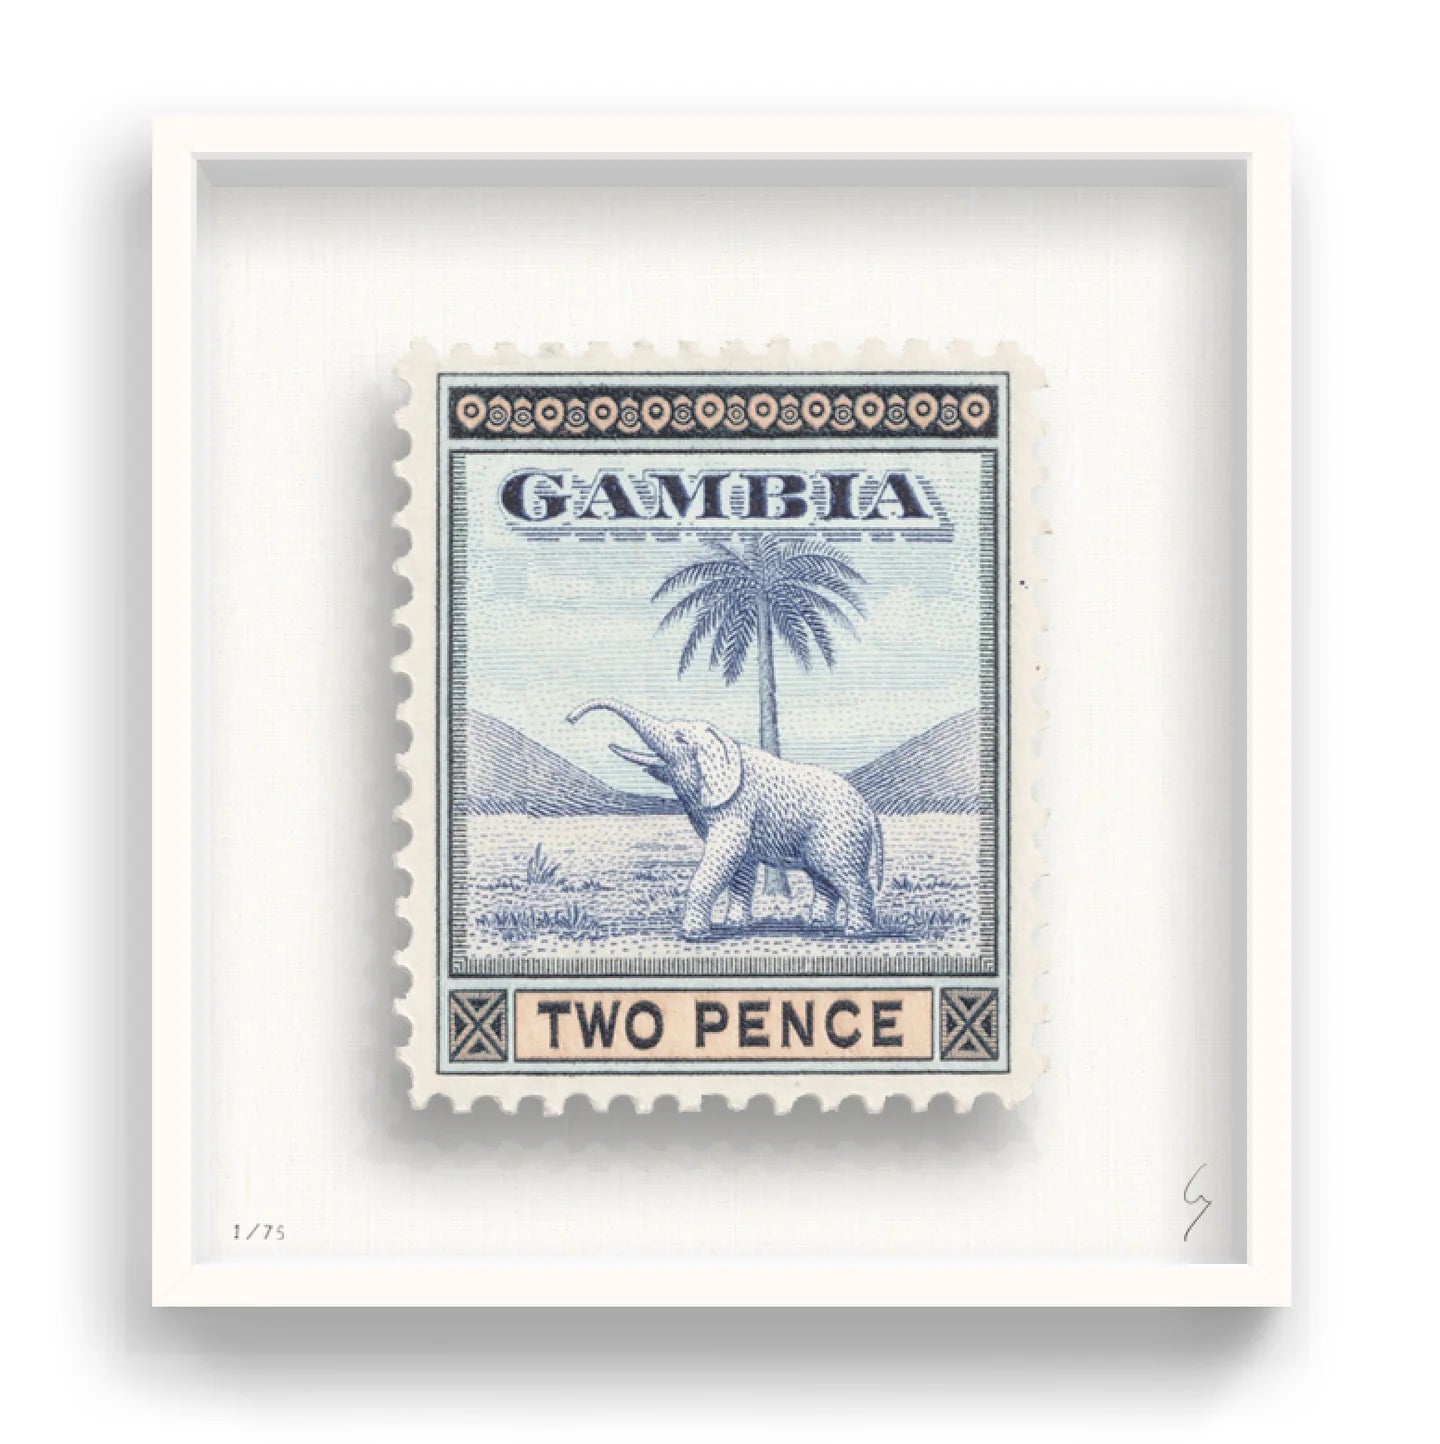 GAMBIA - Smolensky Gallery